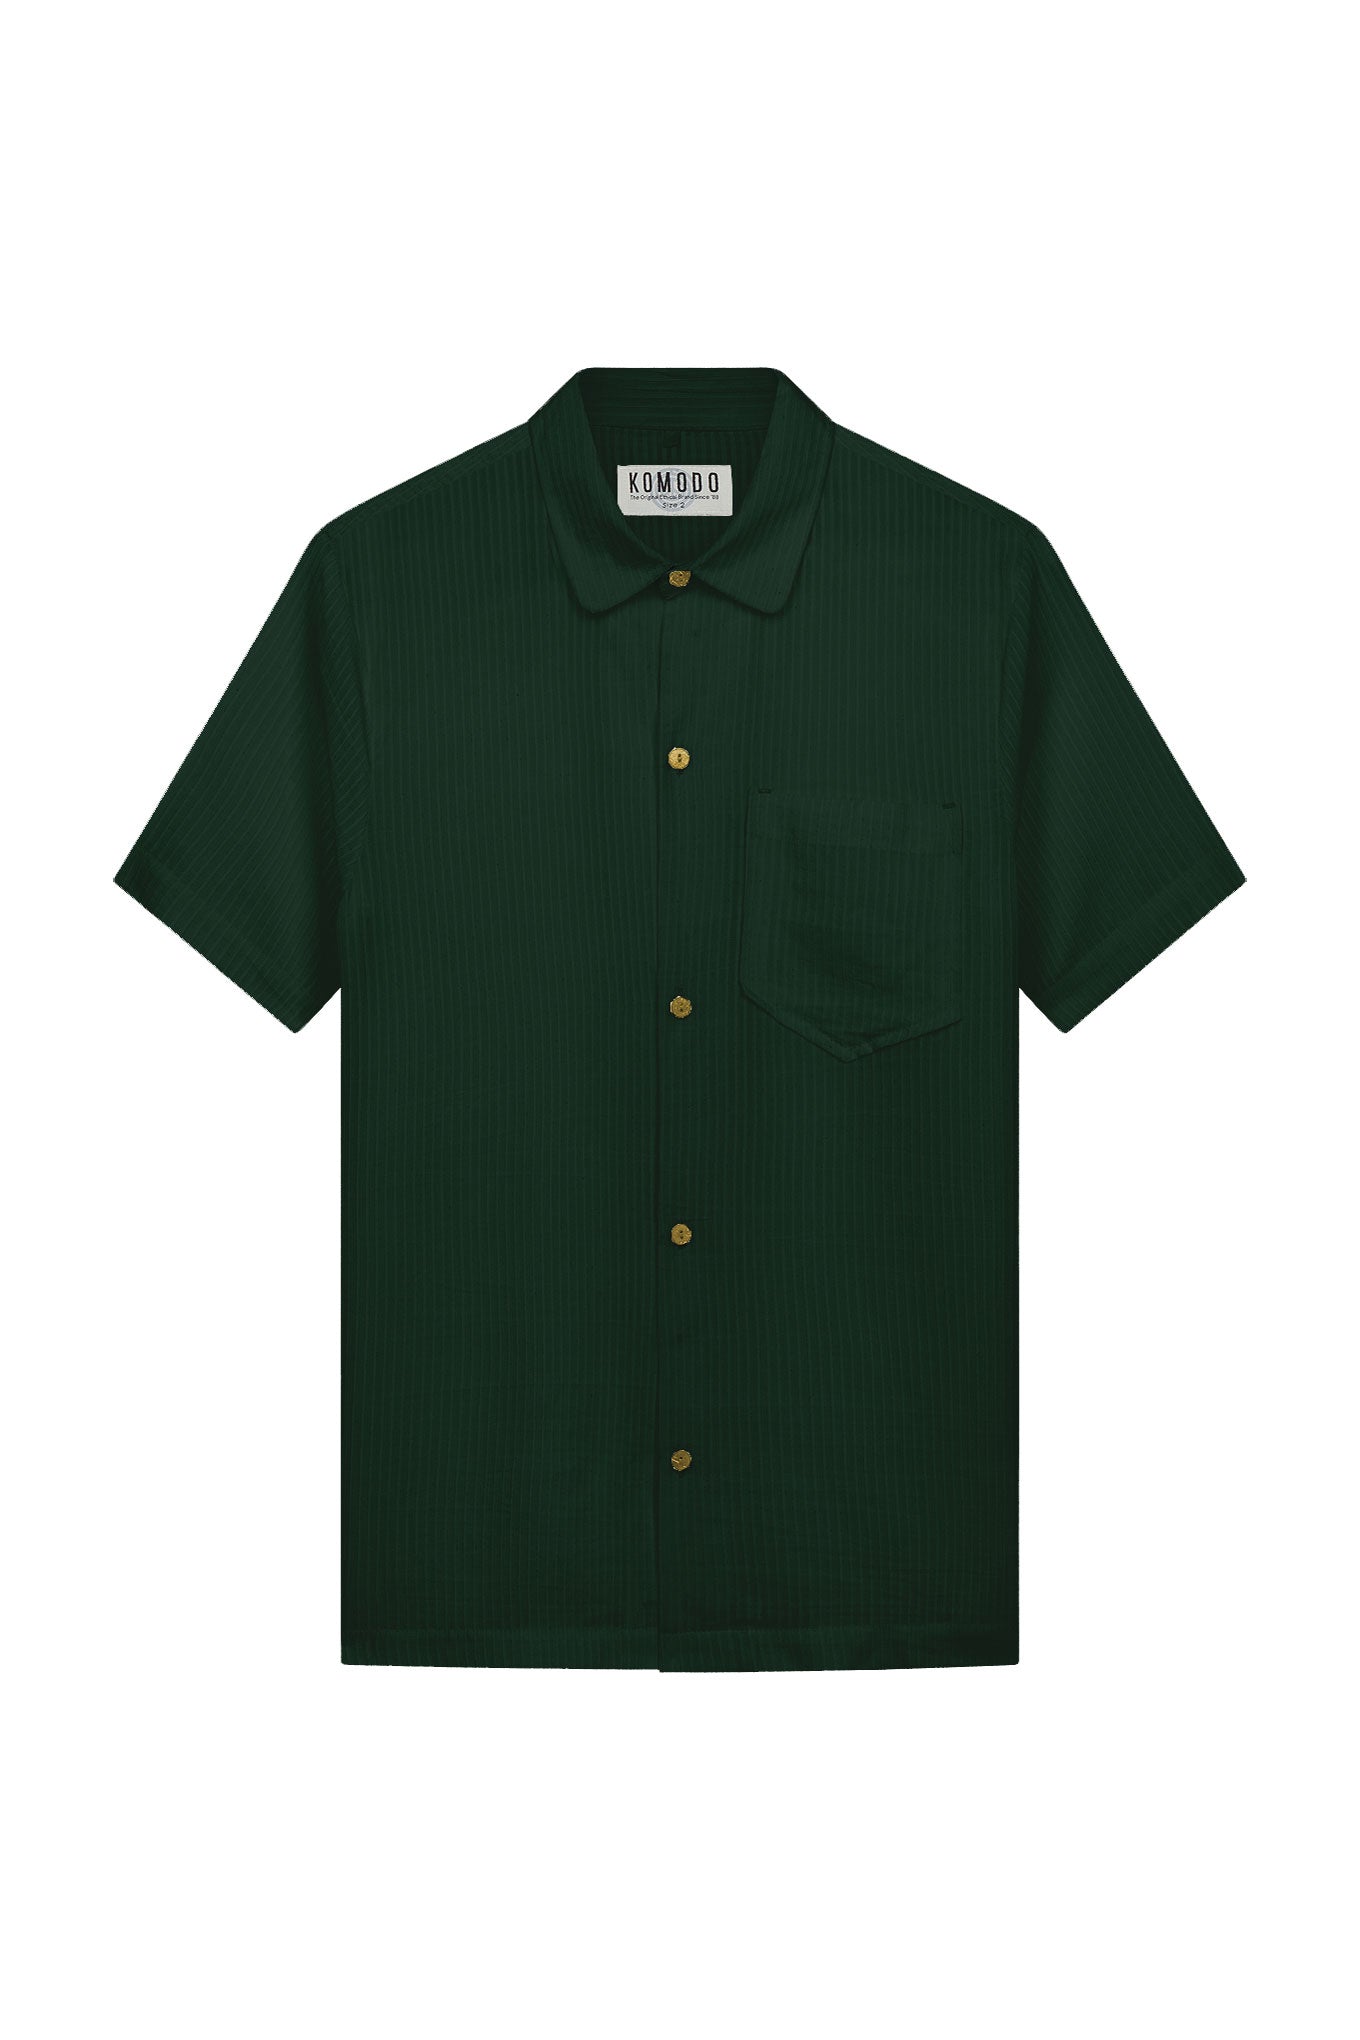 SPINDRIFT Corn Fabric Shirt - Forest Green, Medium